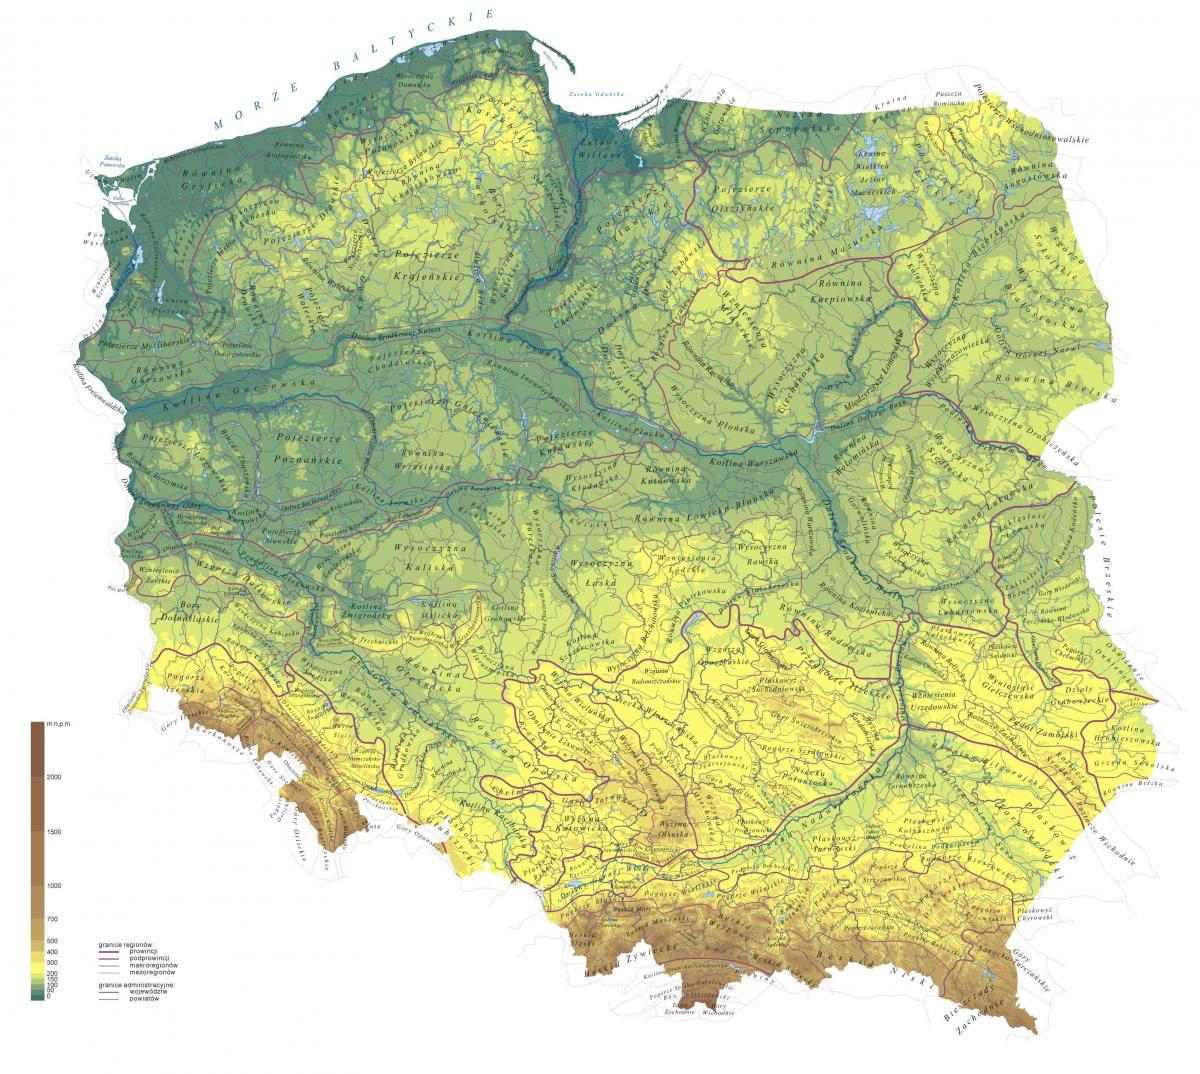 波兰地形图